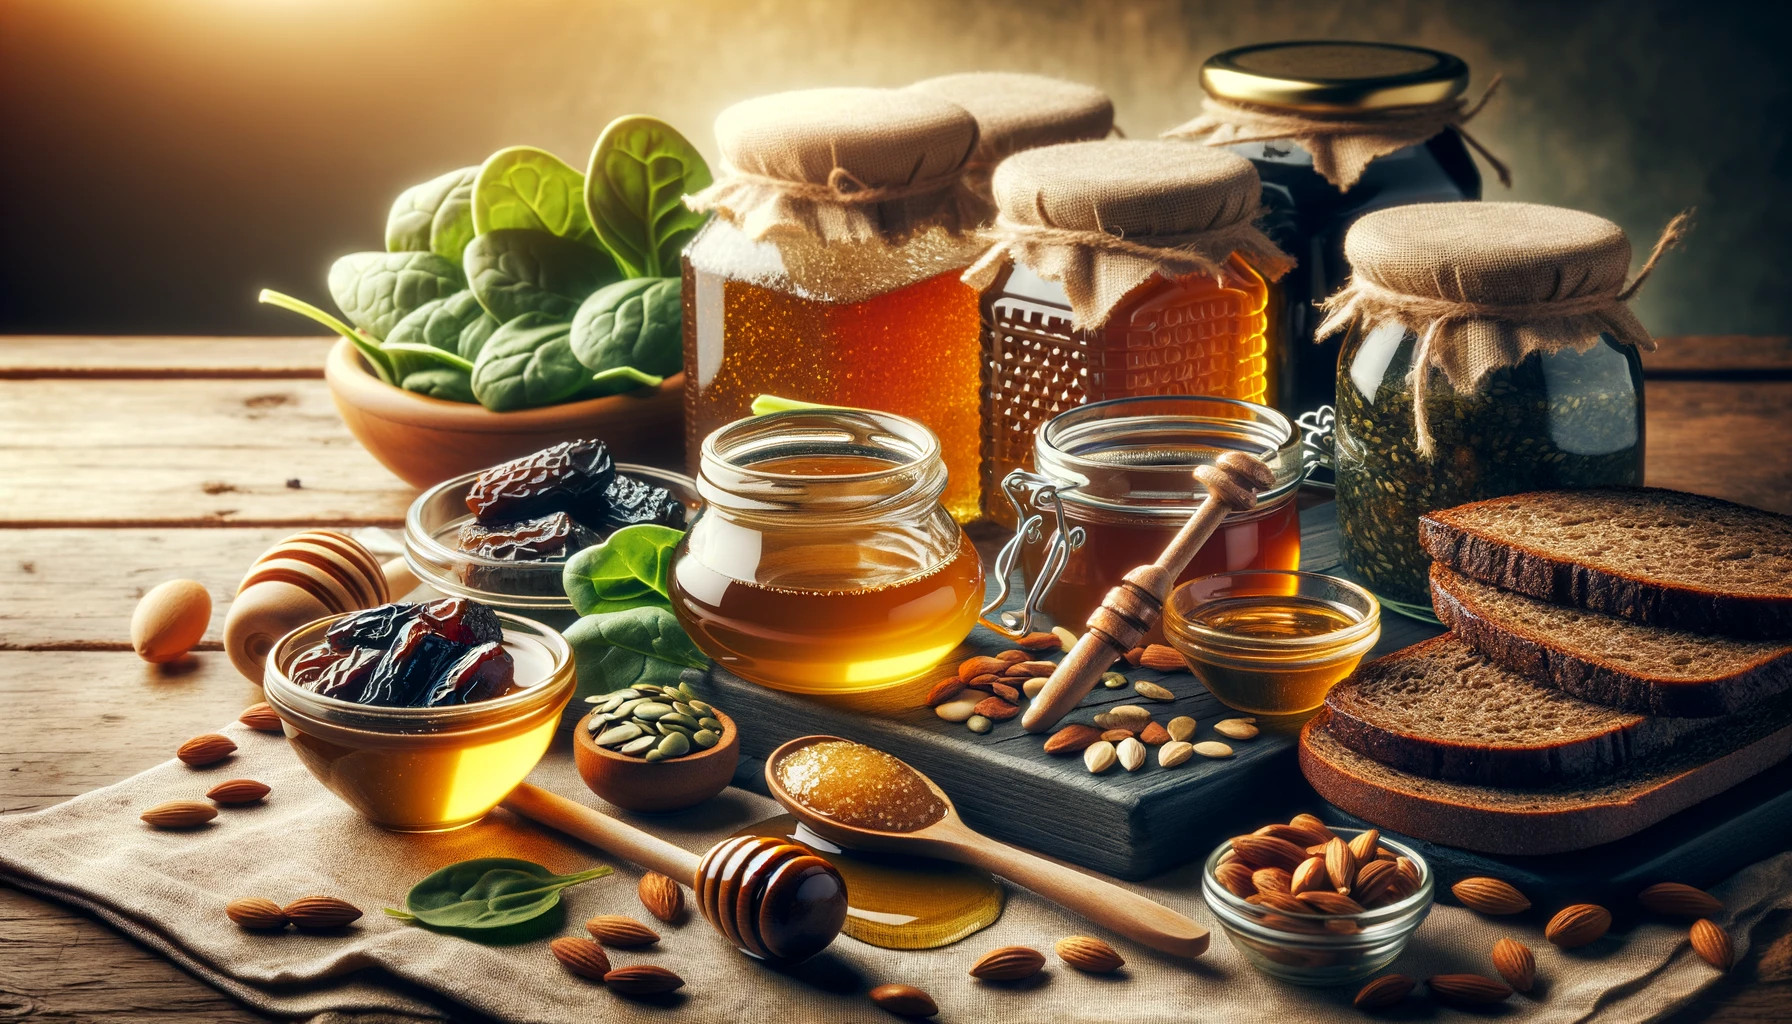 أفضل أنواع العسل لفقر الدم وداعاً للأنيميا وسوء التغذية 